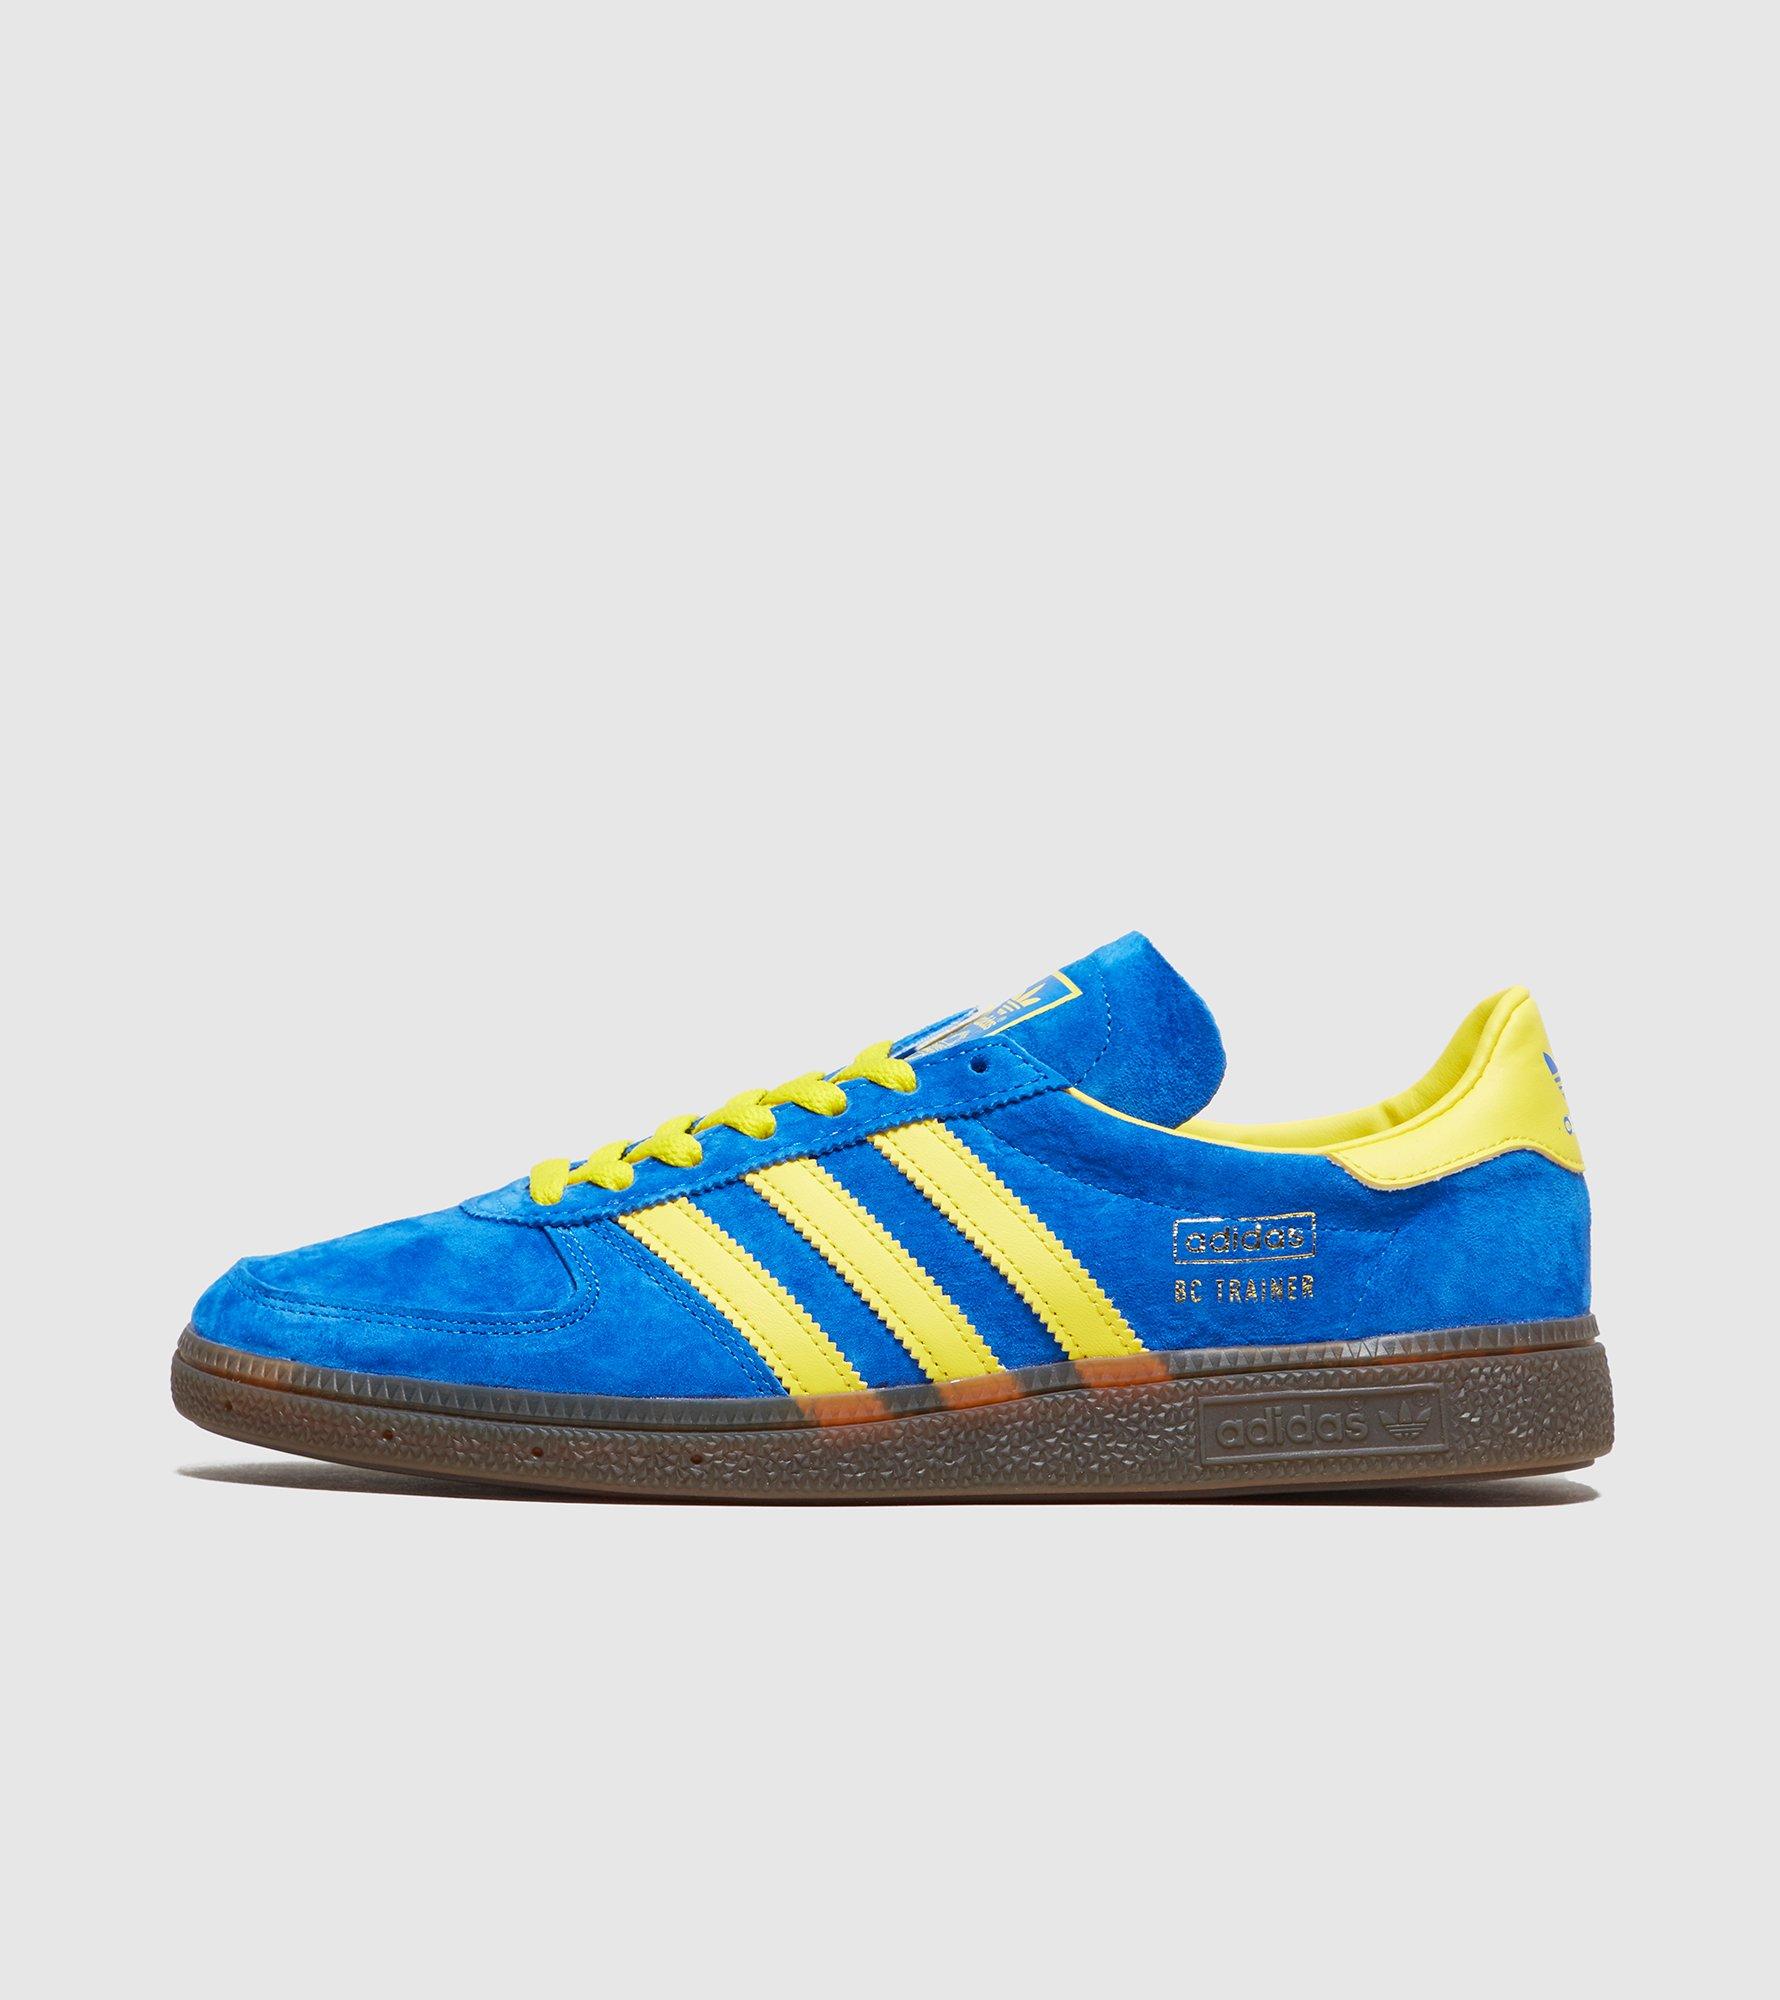 adidas bc blue yellow